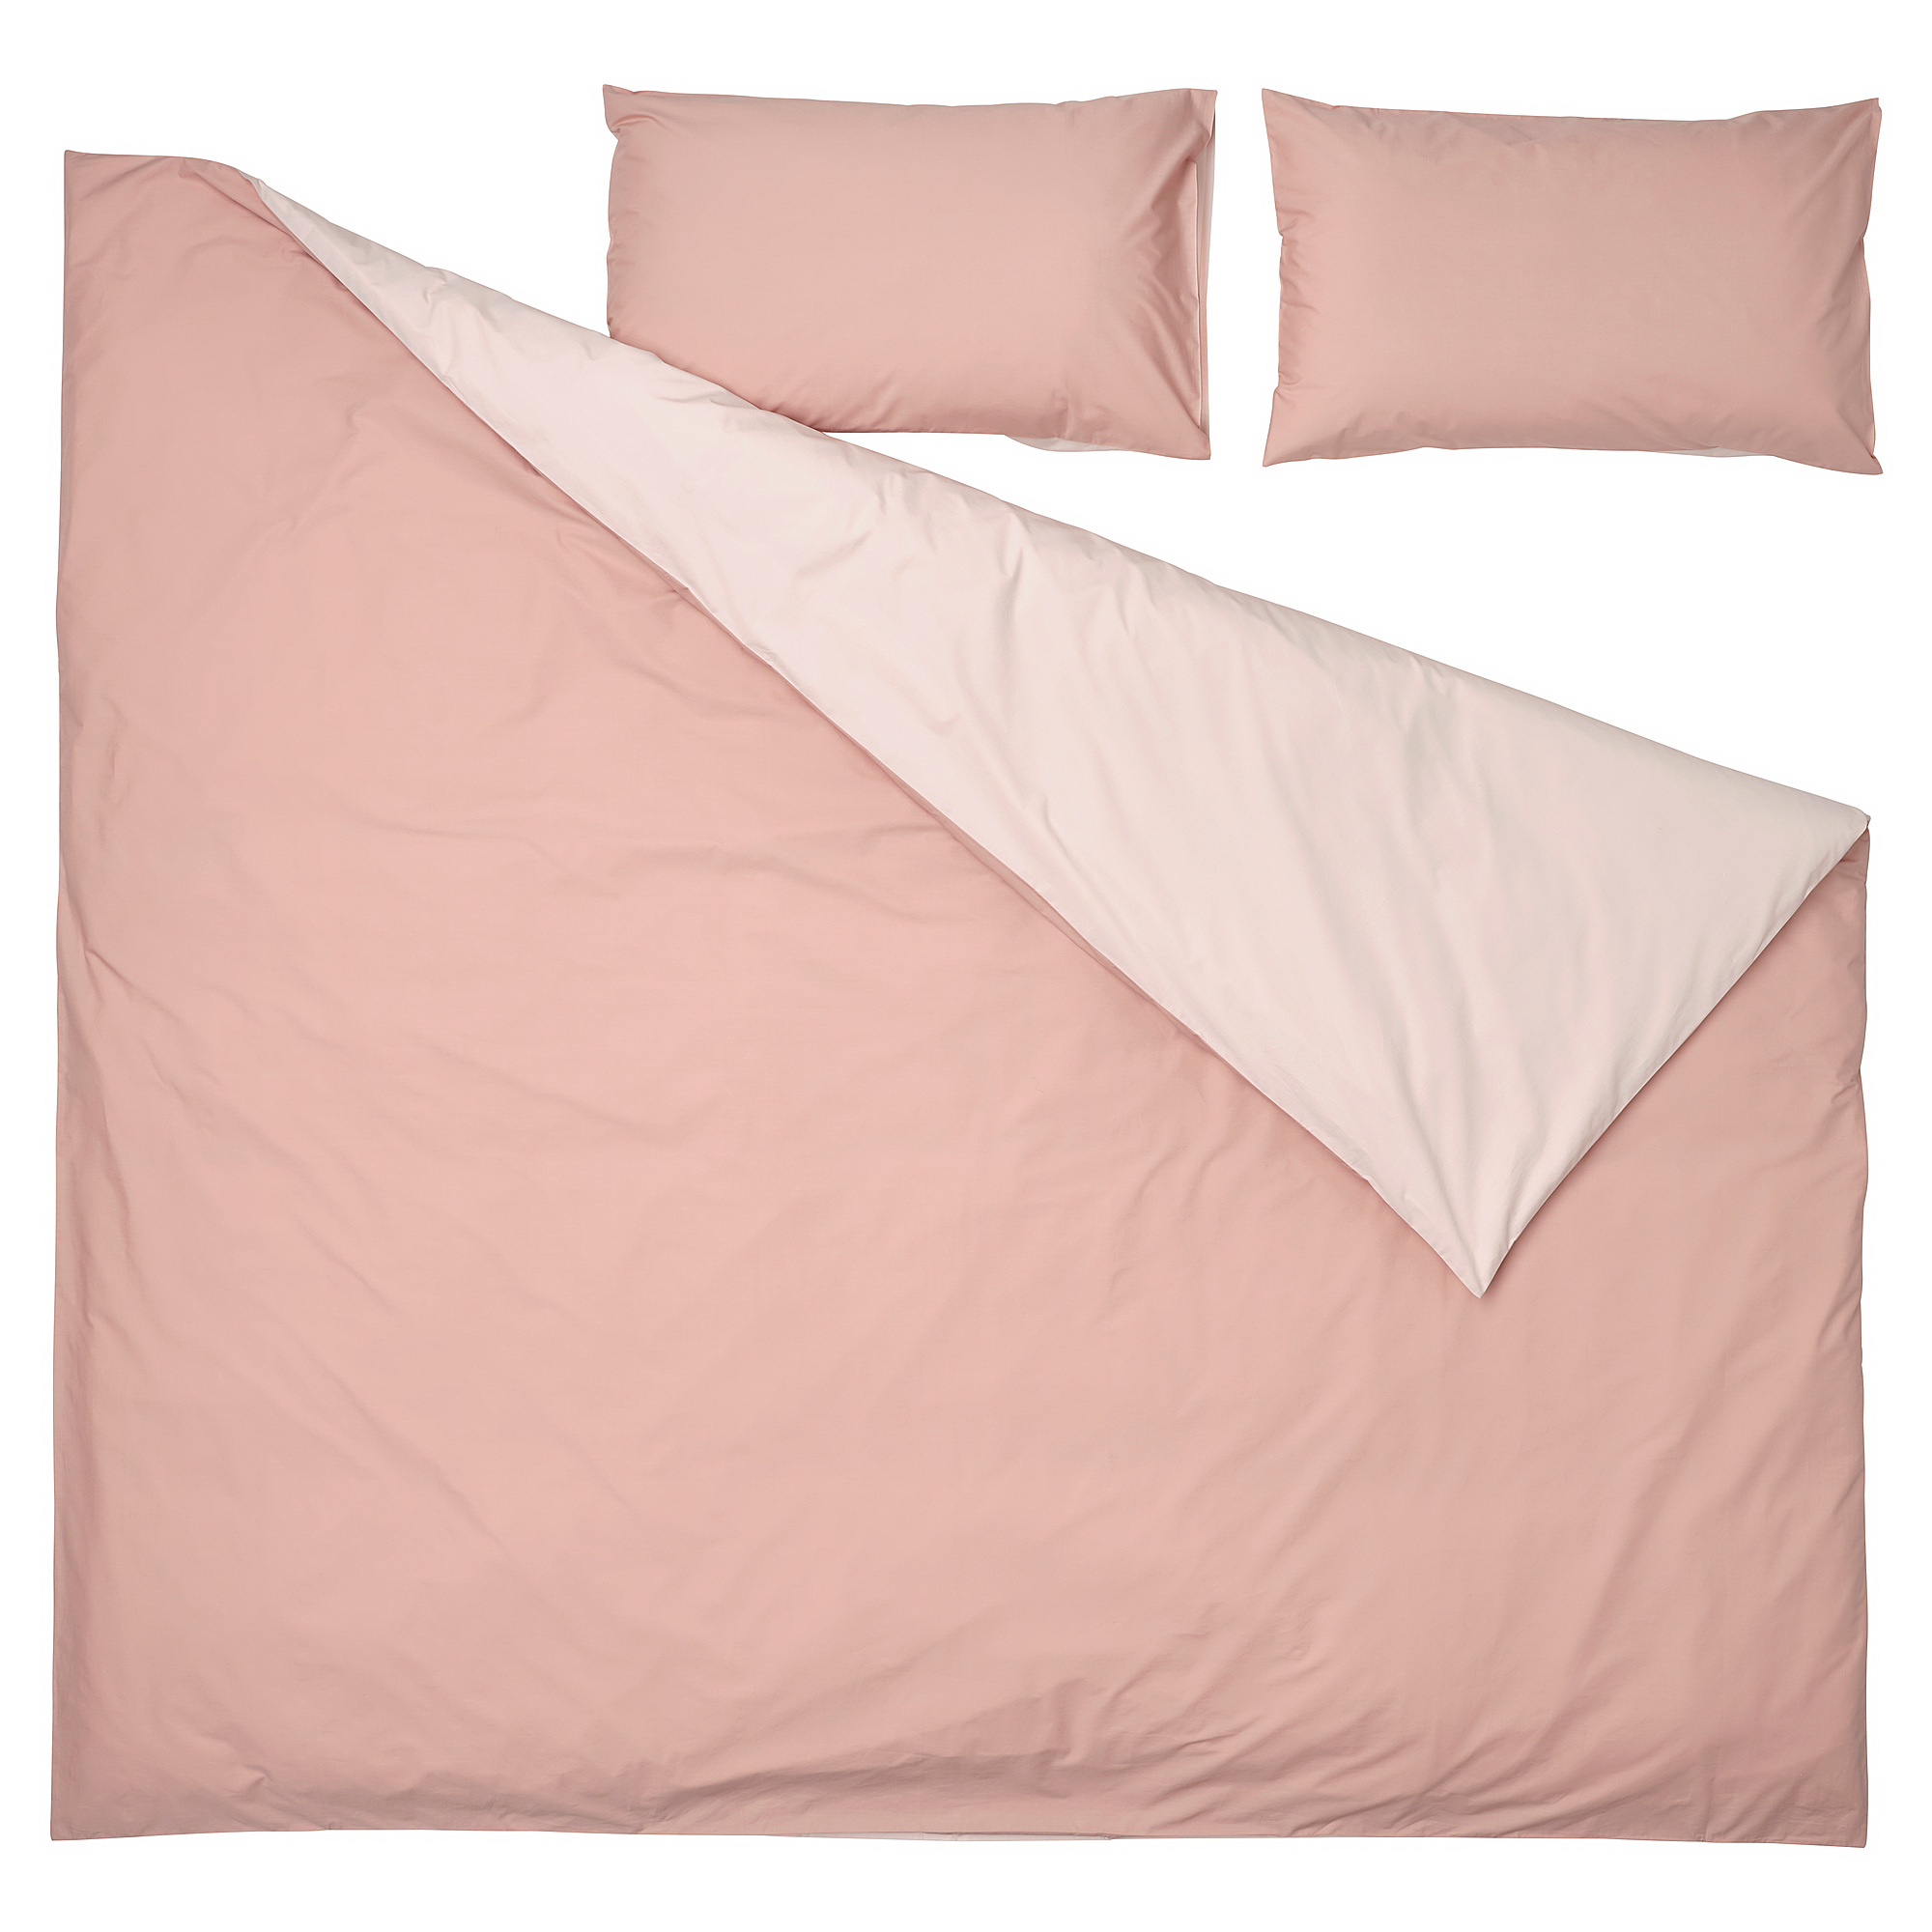 STRANDTALL duvet cover and 2 pillowcases